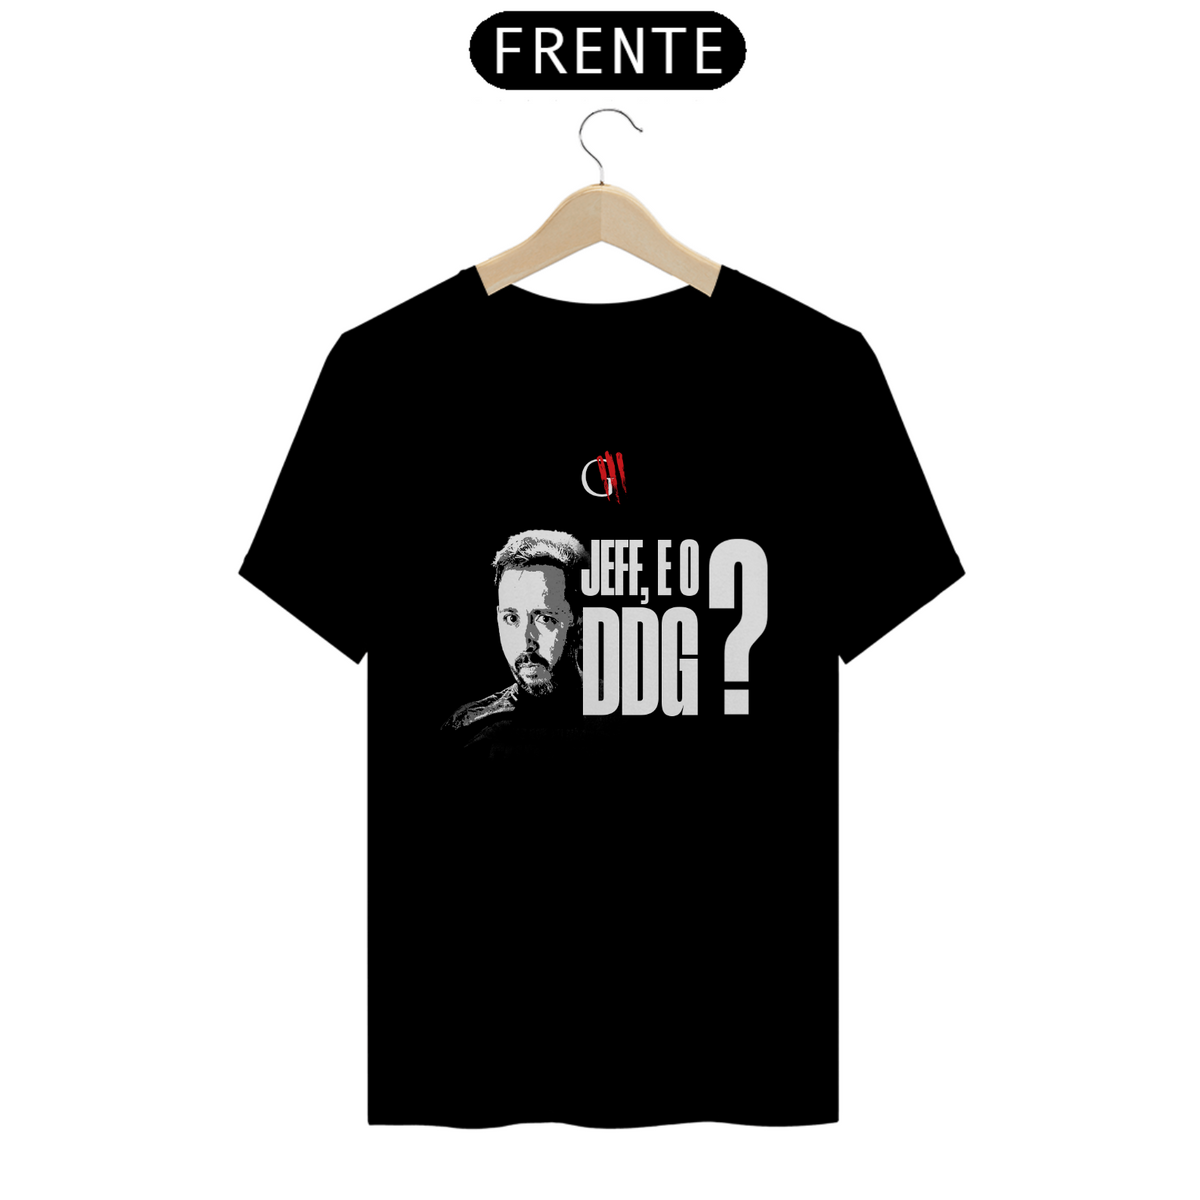 Nome do produto: Camiseta Jeff e o DDG?